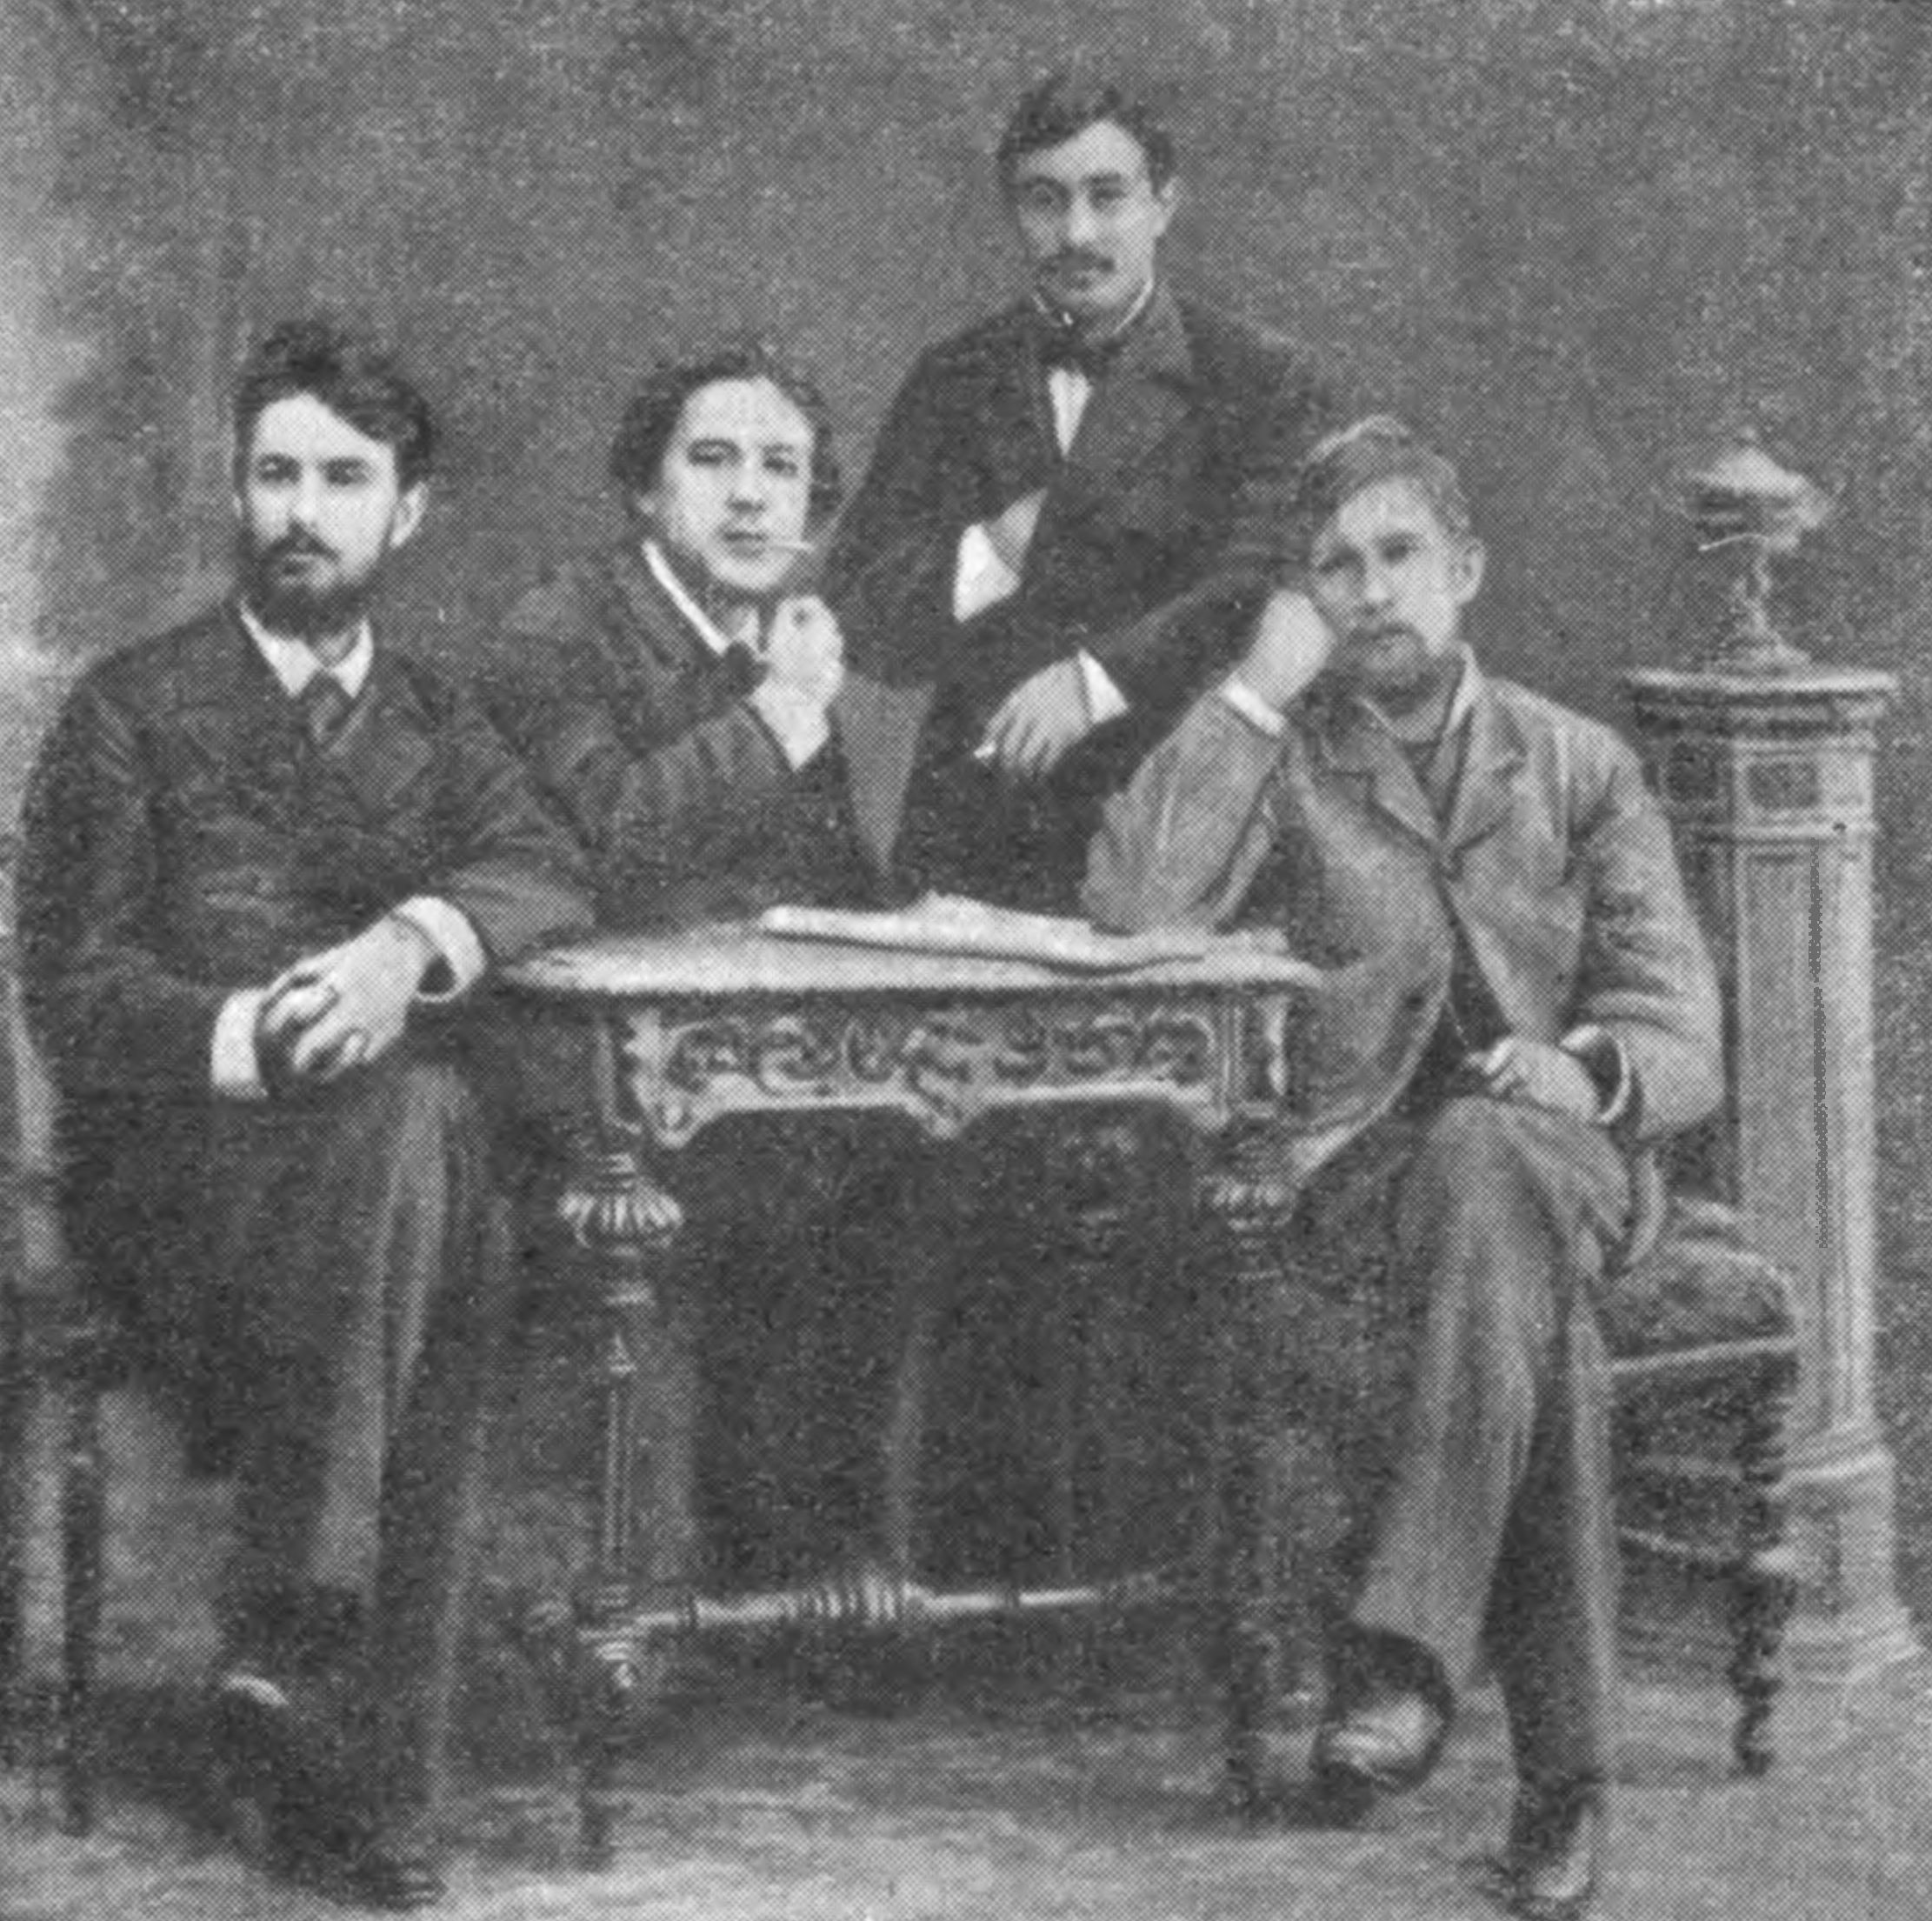 Слева направо: Д.Т. Савельев, А.П. Чехов, В.И. Зембулатов, Н.И. Коробов. Фотография начала 1880-х годов